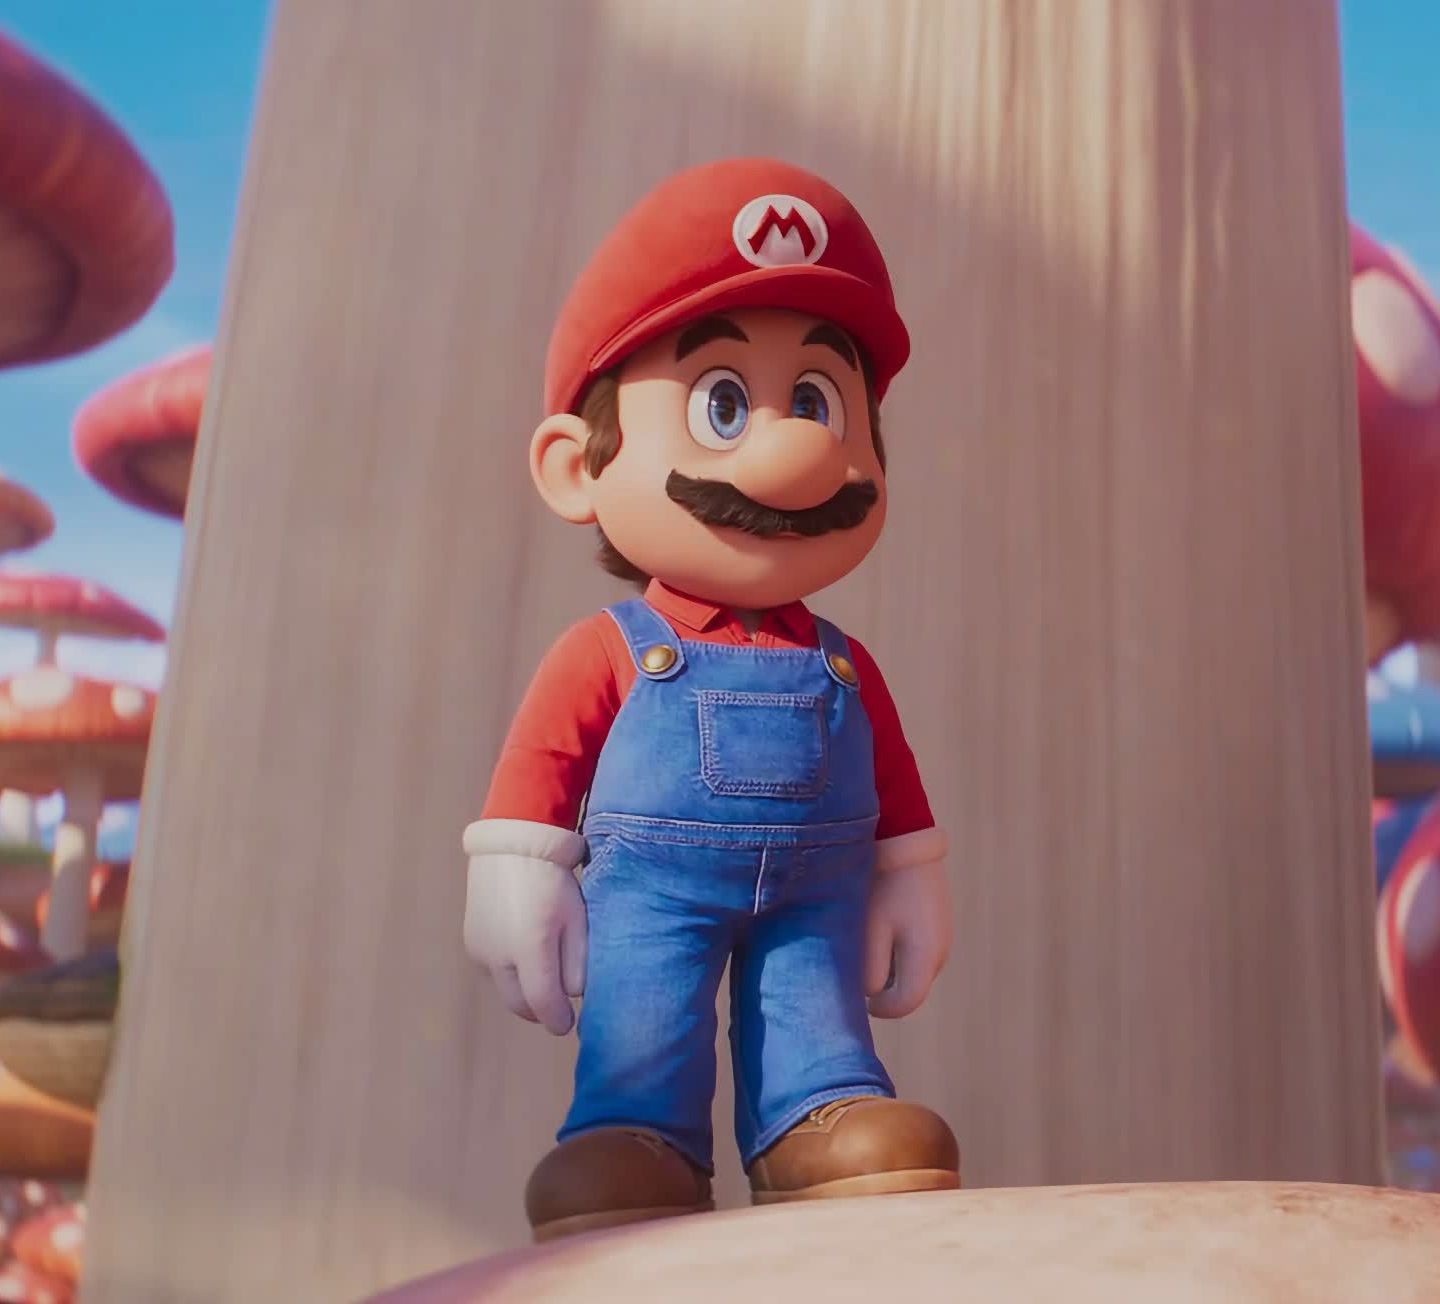 Почему мульт о братьях Марио меркнет на фоне оригинальных видеоигр и даже фильма 90-х?